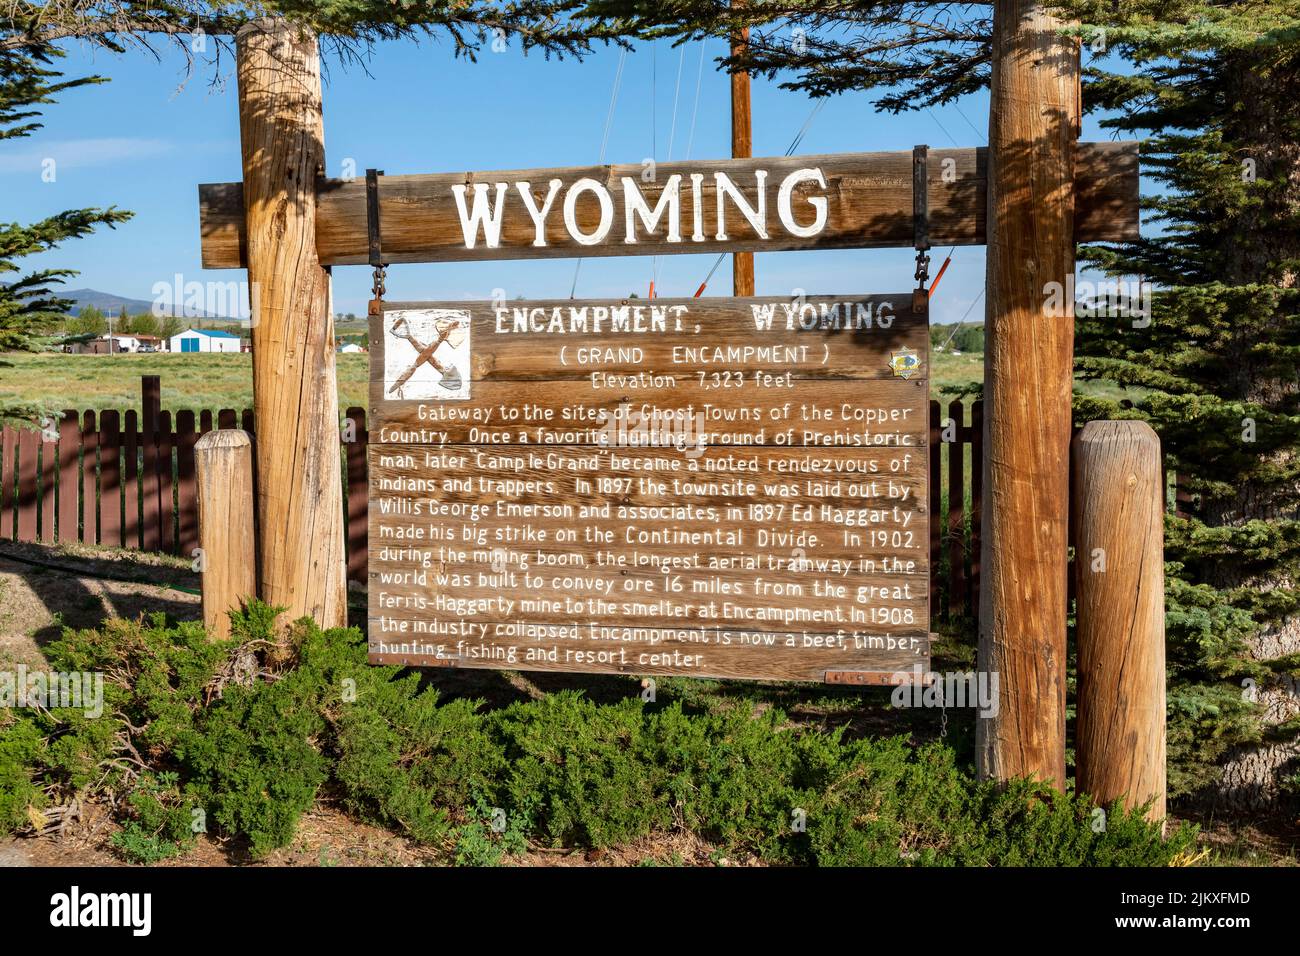 Accampamento, Wyoming - Un indicatore history spiega la storia di Encampment, anche chiamato Grand Encampment. Foto Stock